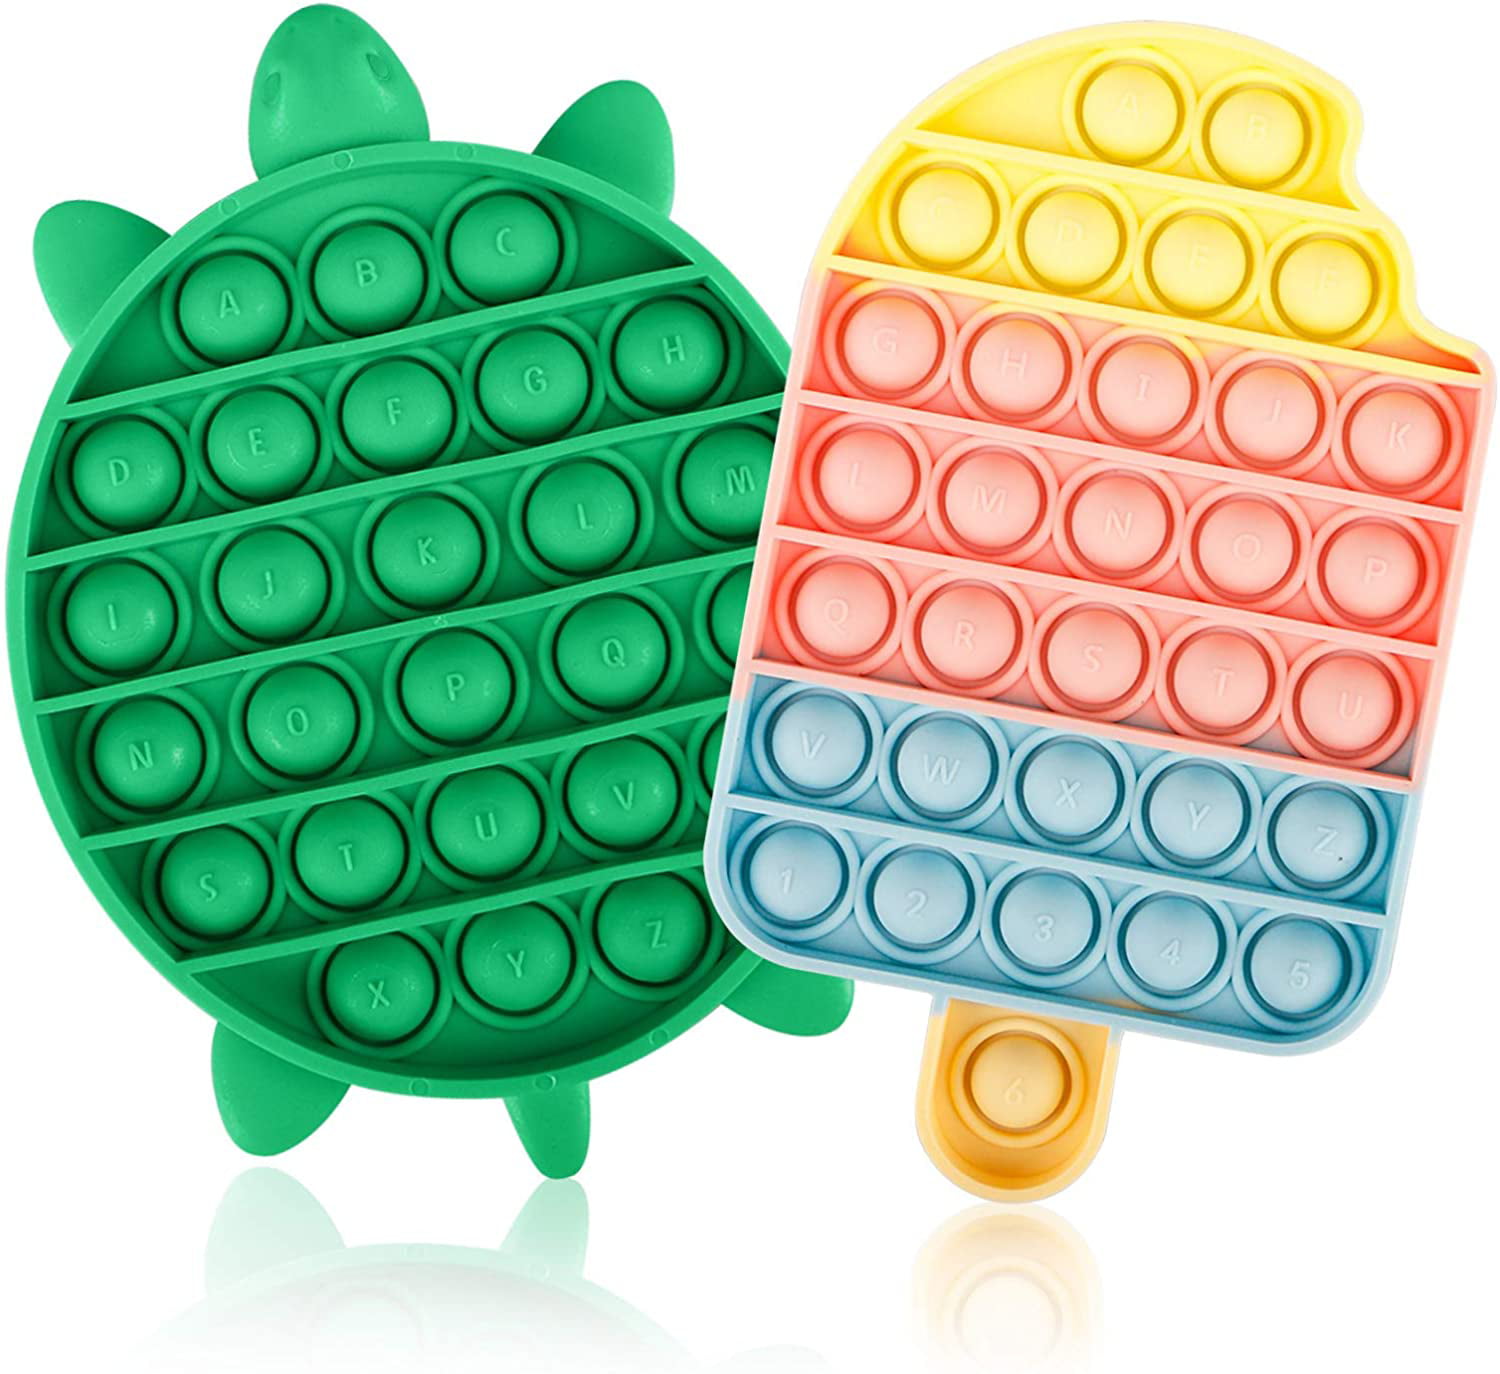 Details about   Pop It Square Sensory Fidget Push Bubble Stress Relief Autism Family Game Toys 